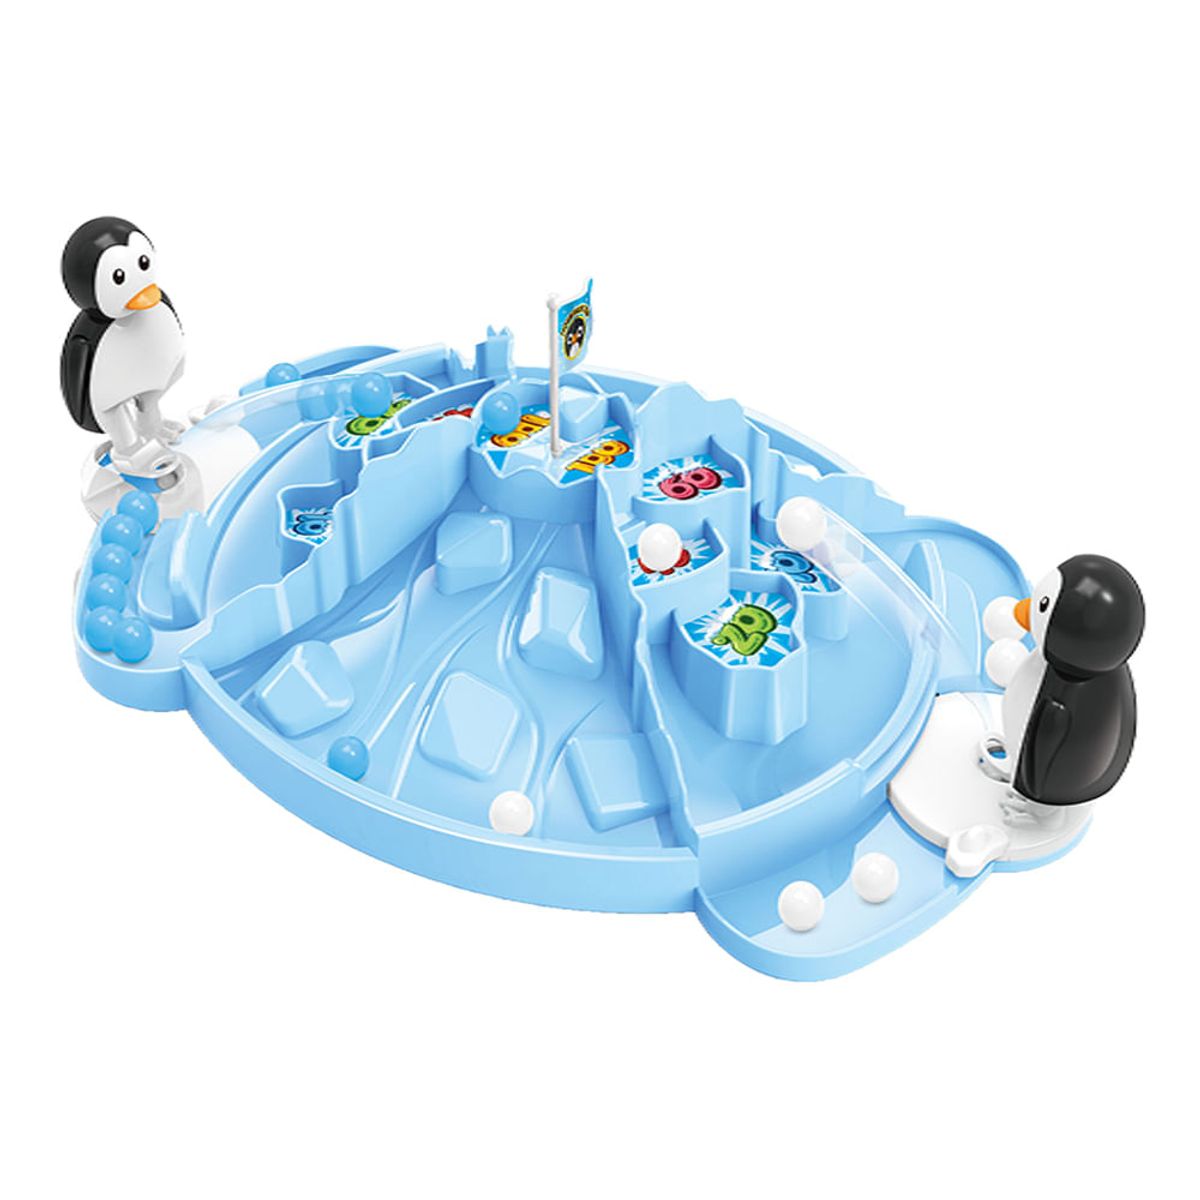 Jogo do pinguim no gelo: Com o melhor preço